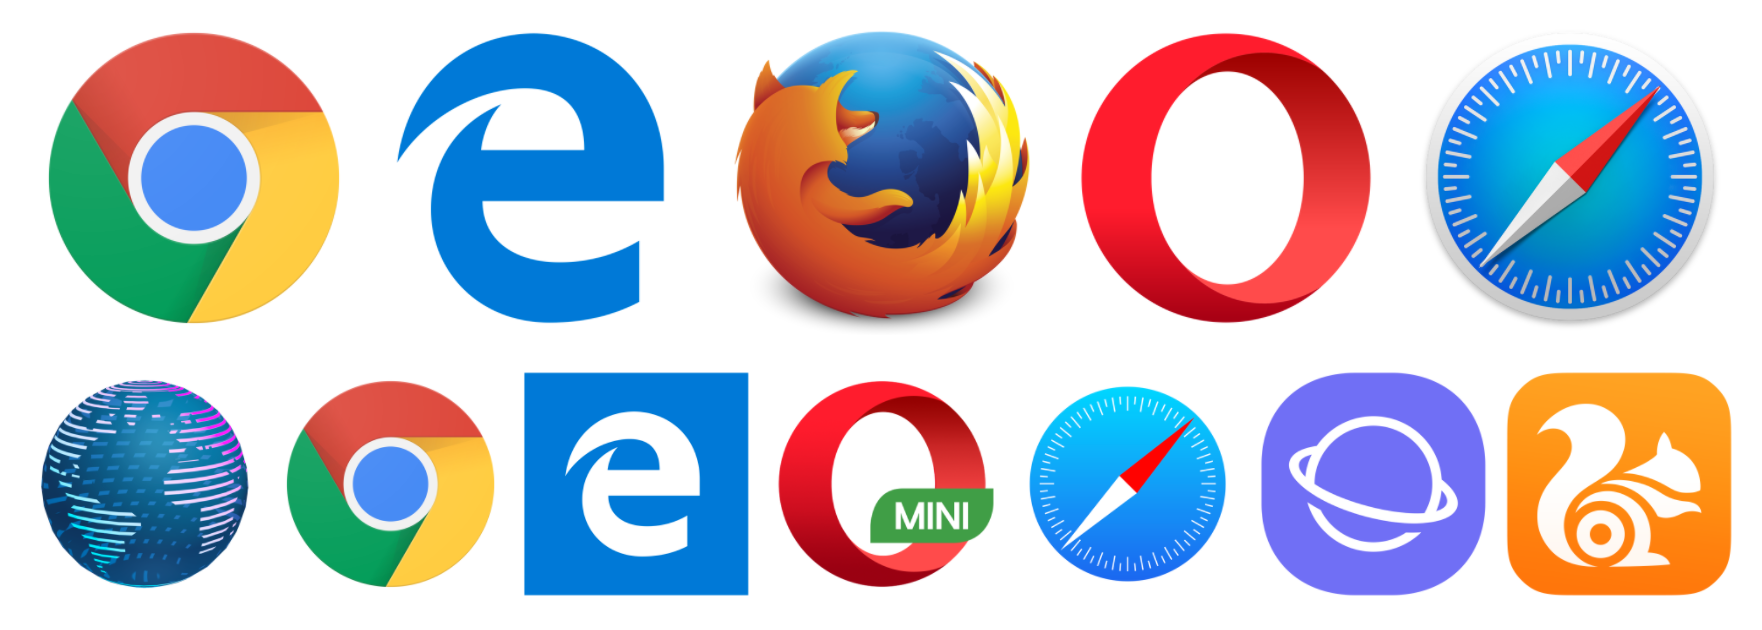 Браузер картинки. Разные браузеры. Логотипы браузеров. Иконки популярных браузеров.